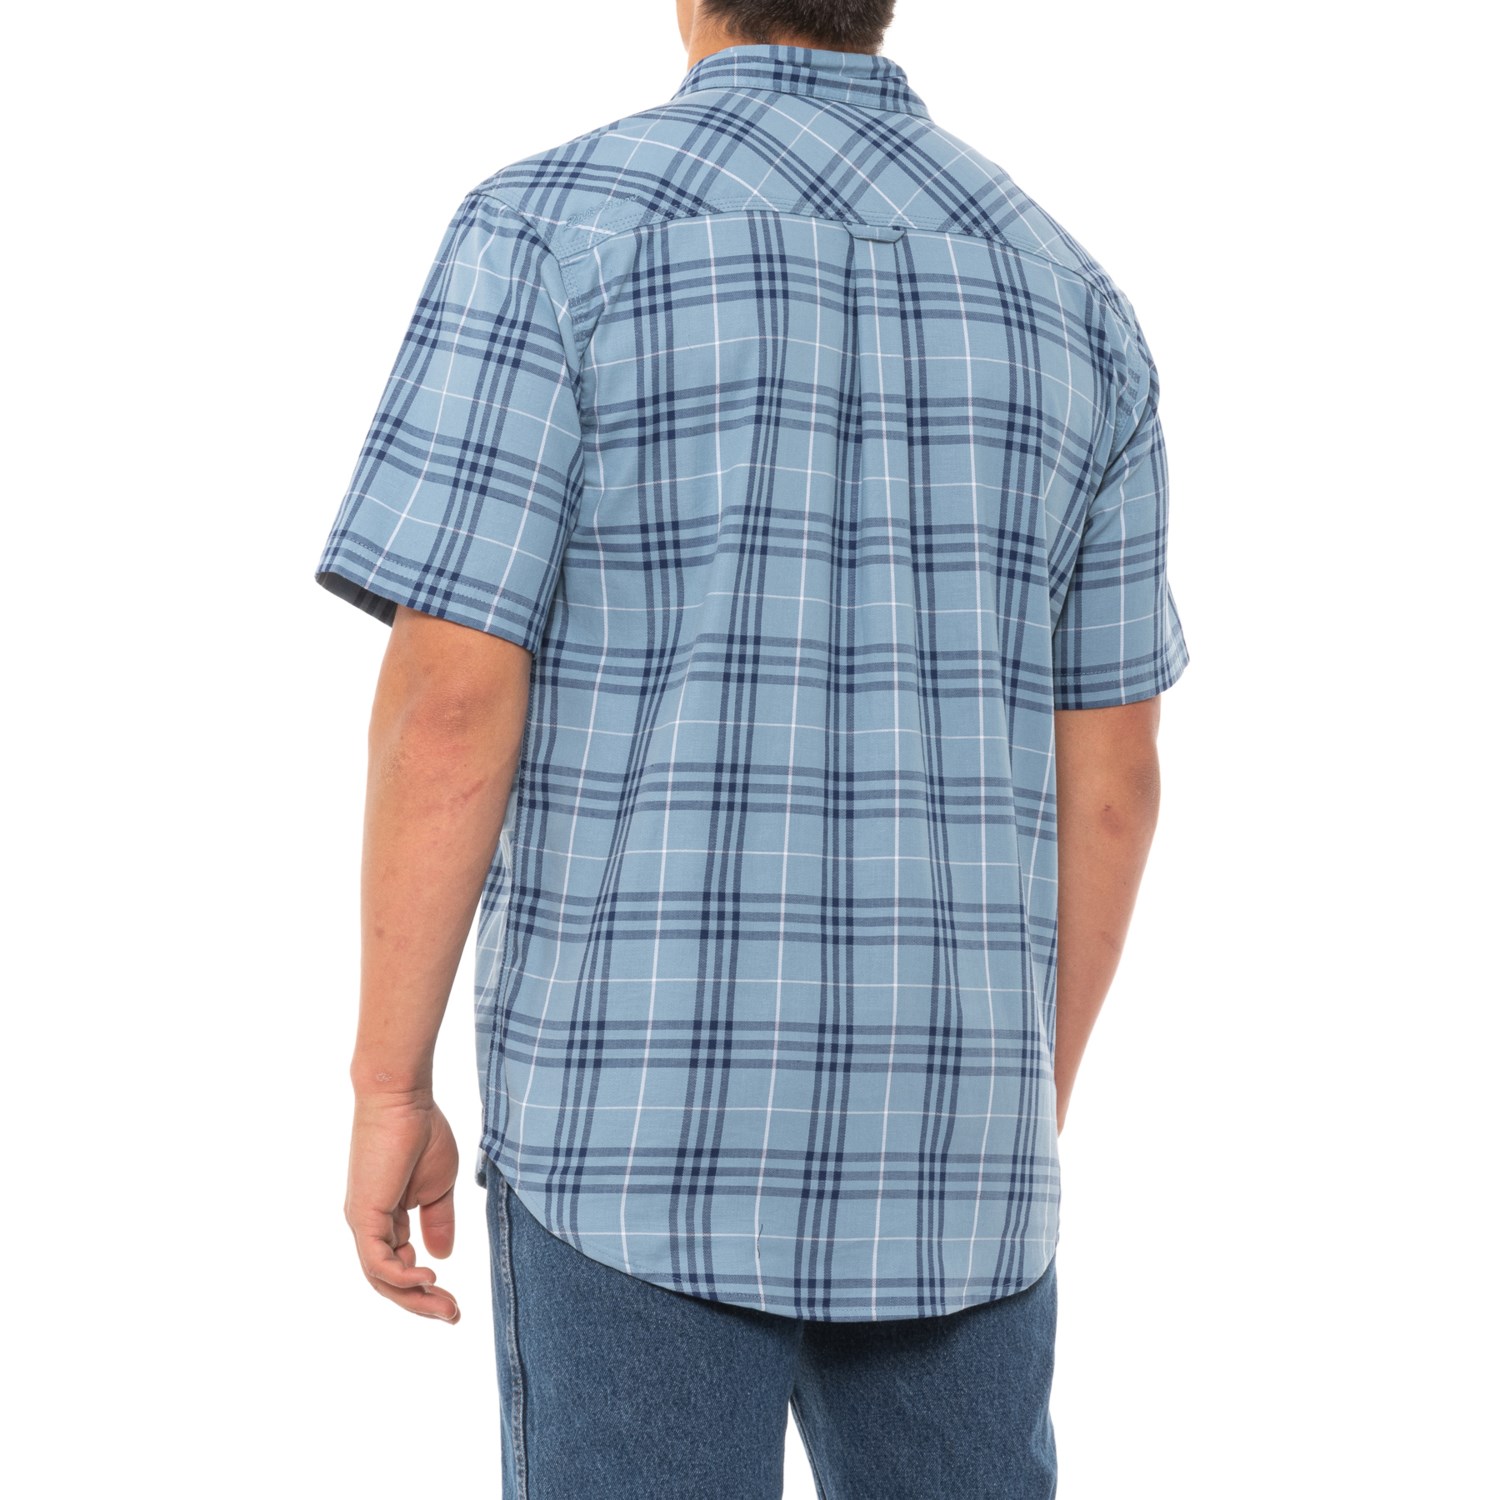 Eddie Bauer Workwear Workload Plaid Woven Work Shirt (For Men) - Save 66%